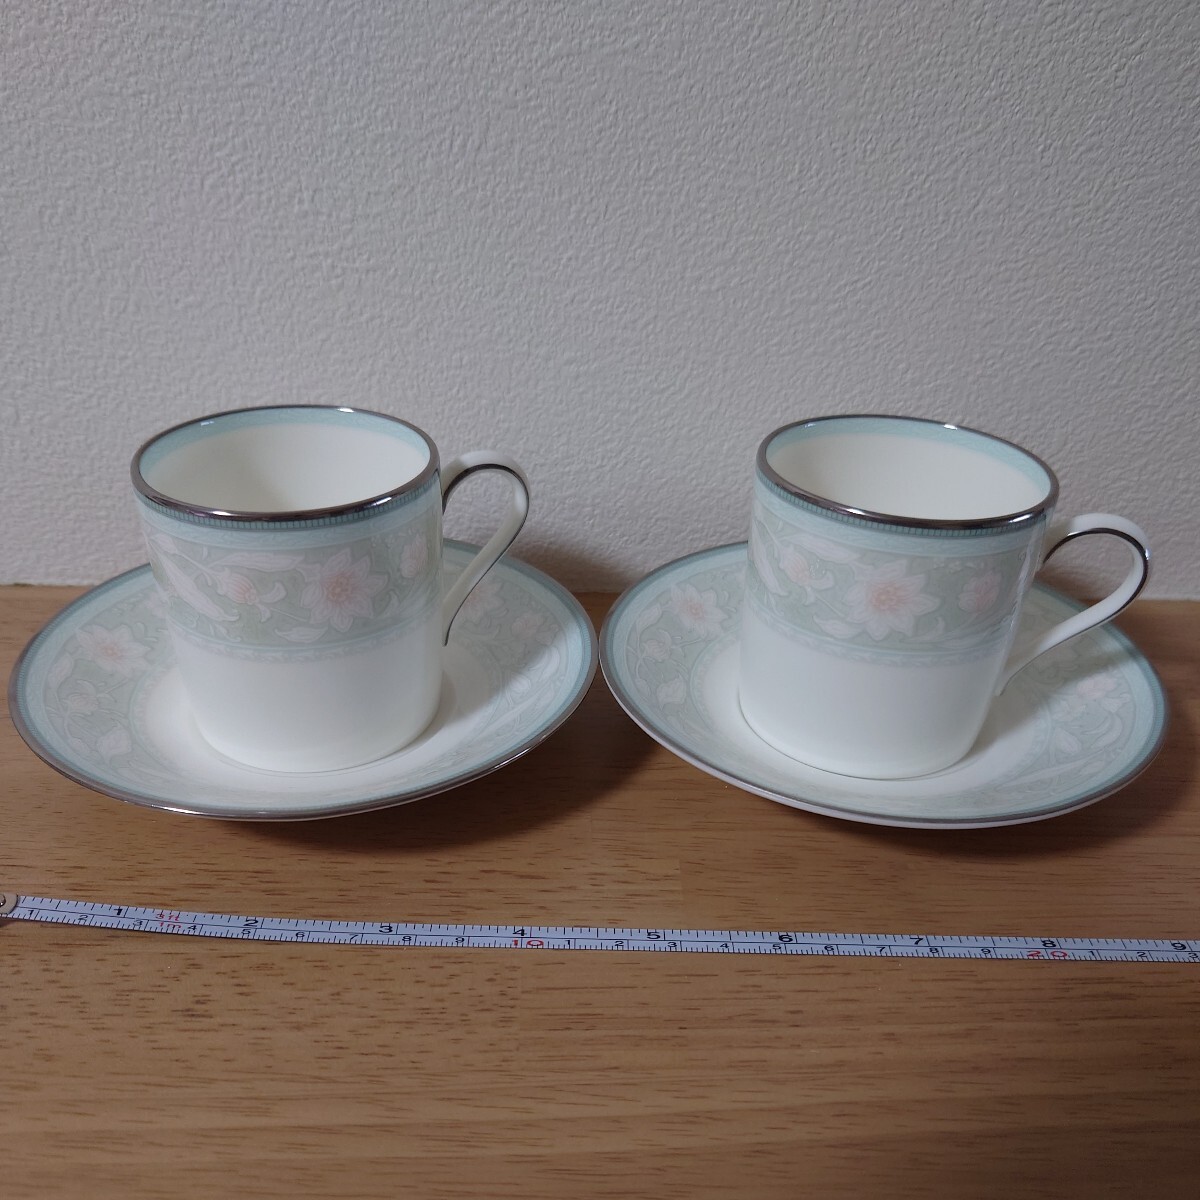 ソーサー カップ ノリタケ ペア コーヒーカップ 洋食器 Noritakeデミタスカップ ナルミNARUMI 新品未使用の画像1